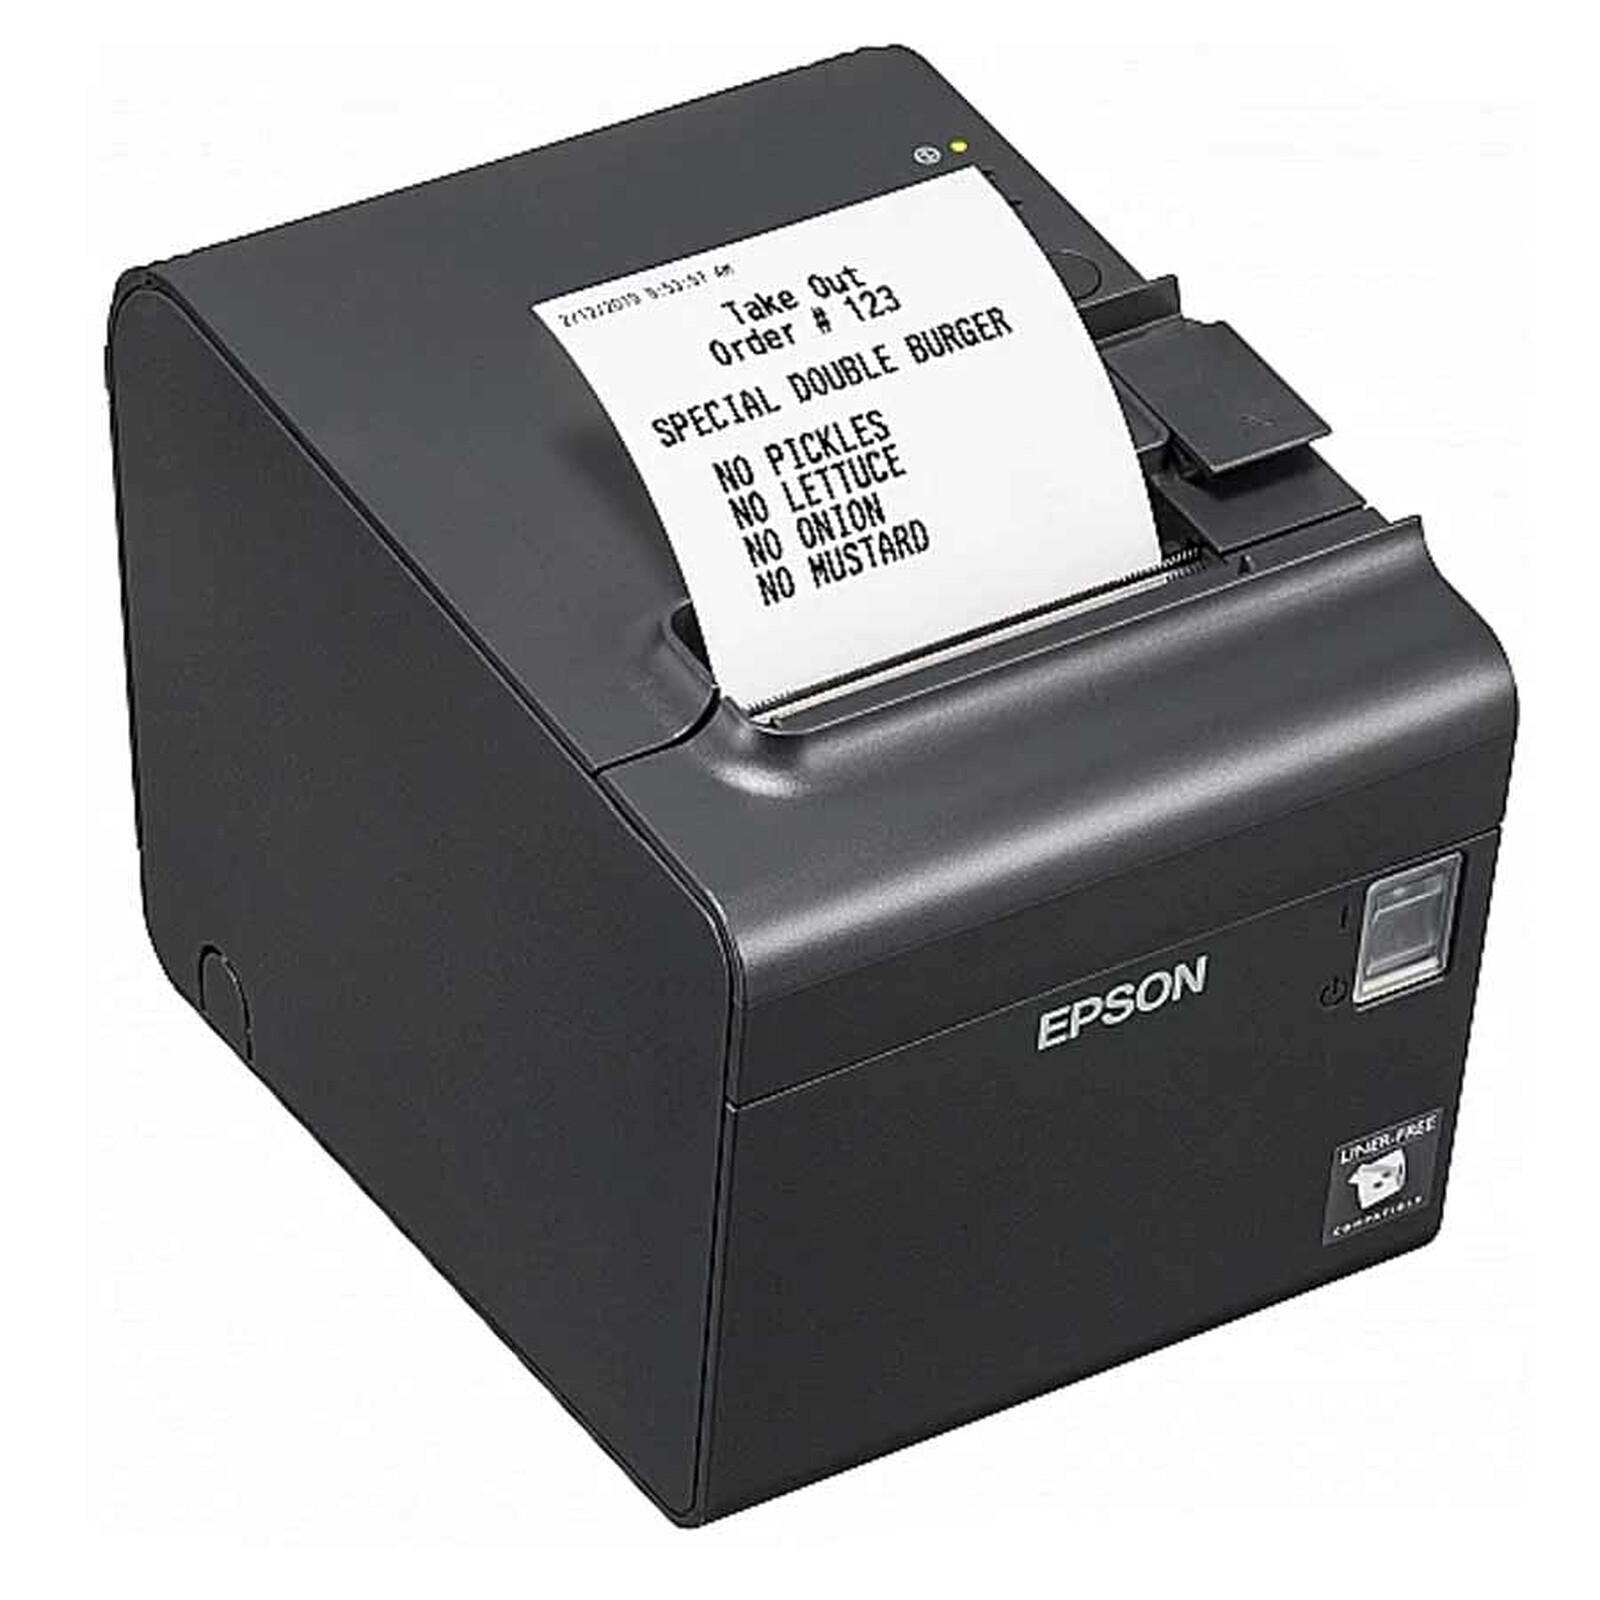 Epson TM-L90LF - Imprimante thermique - Garantie 3 ans LDLC